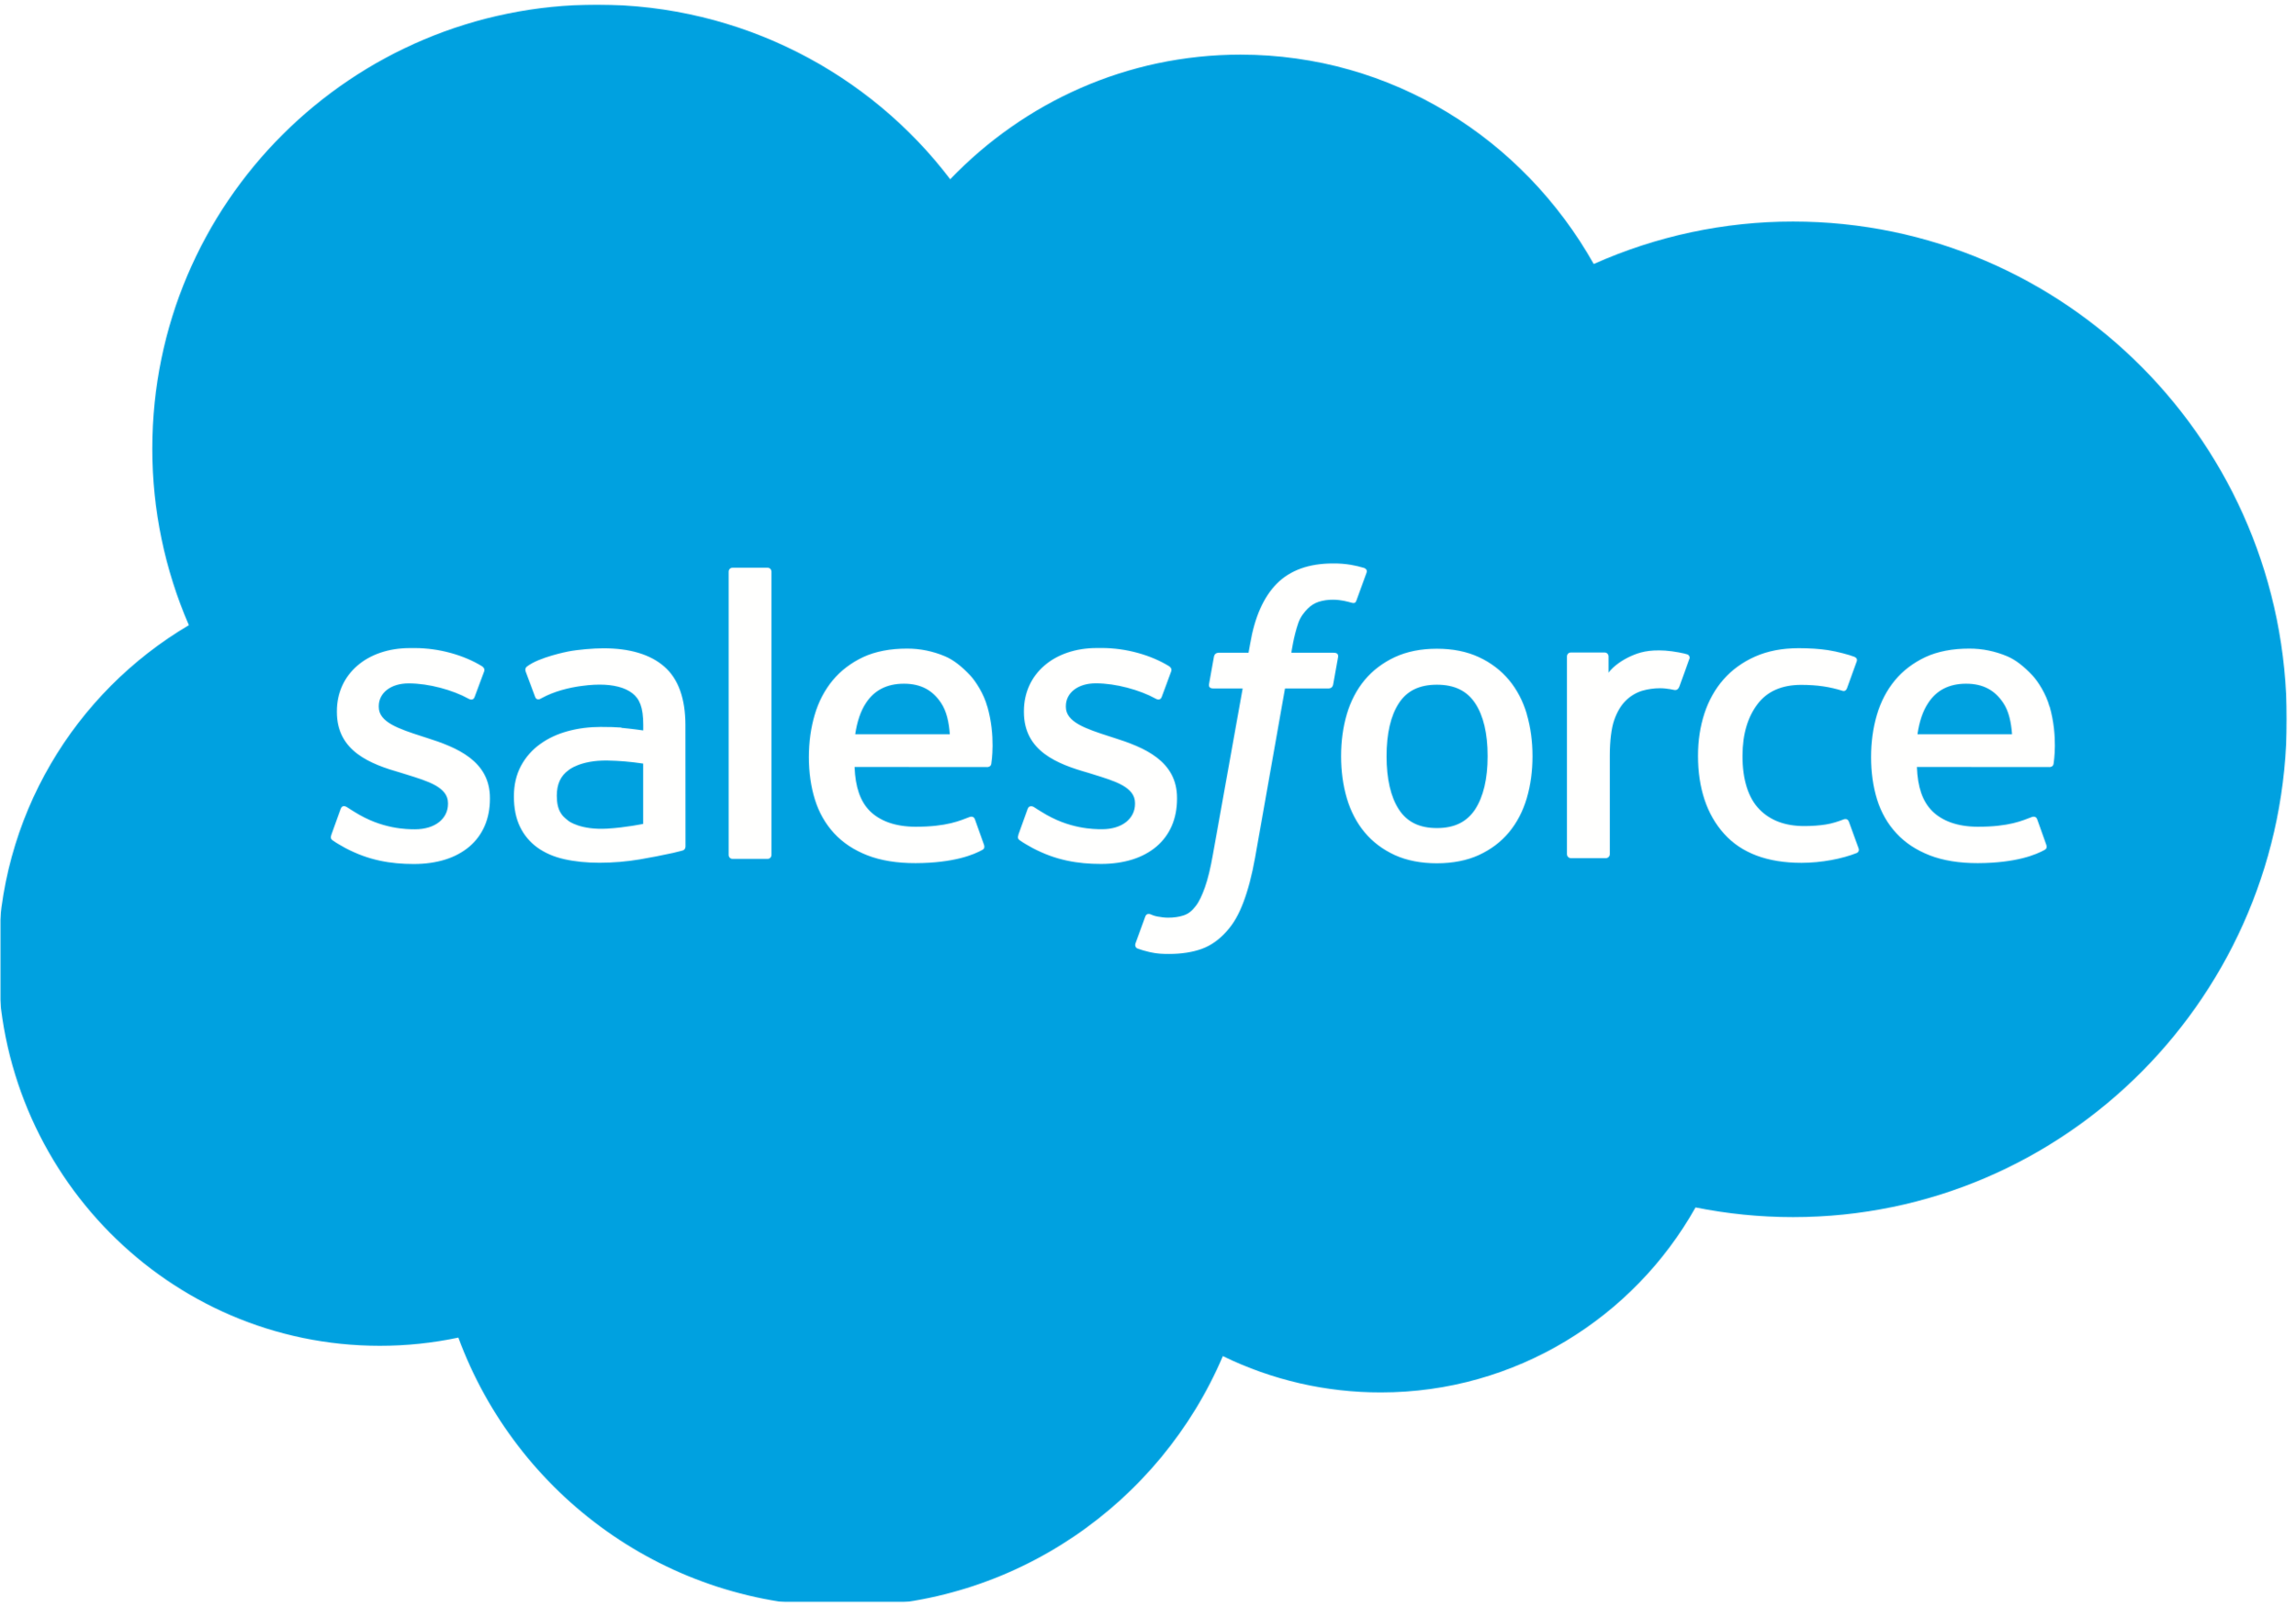 salesforce logo.png